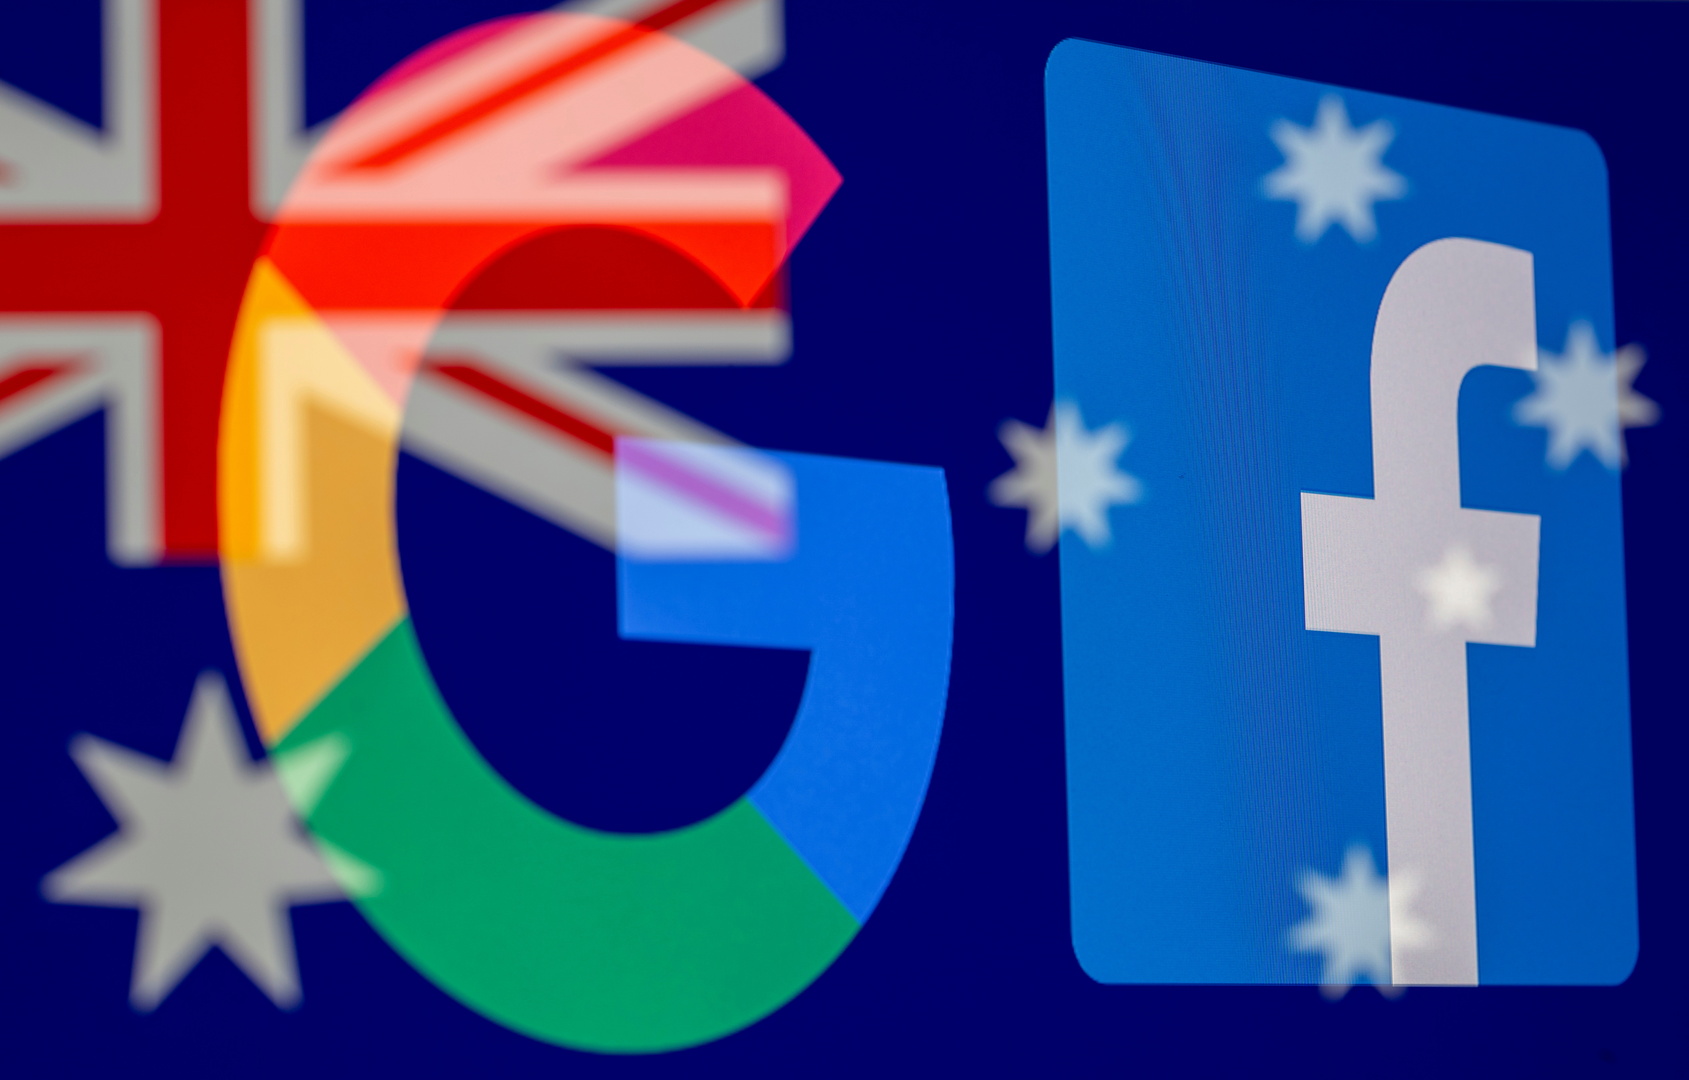 أستراليا تقر قانونا يجبر عمالقة التكنولوجيا على دفع أموال لوسائل الإعلام مقابل محتواها